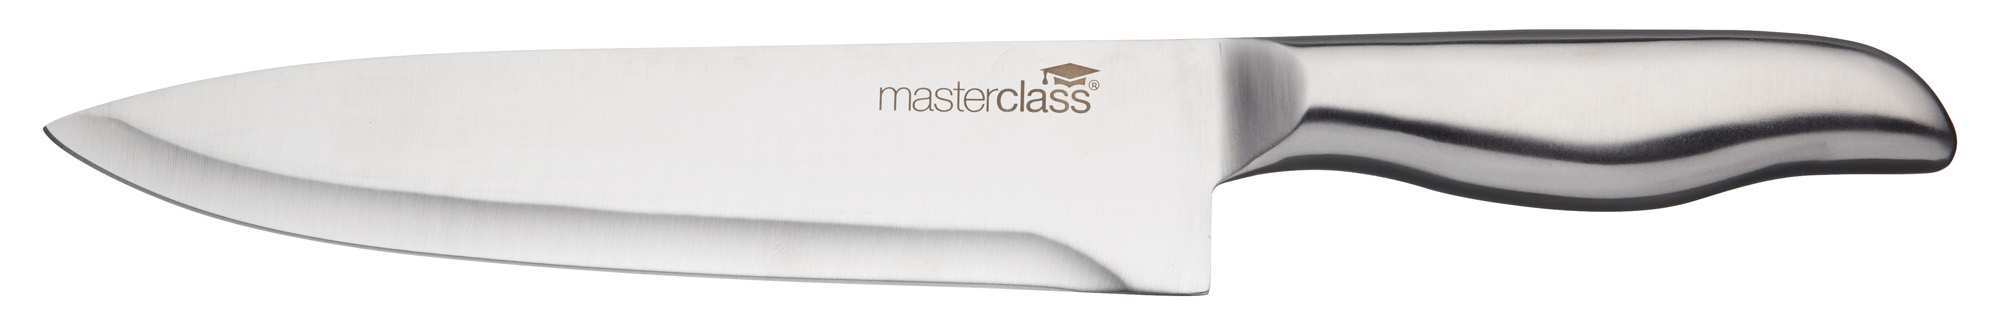 Steel Kithcen Knife Set in Block MasterClass Orissa